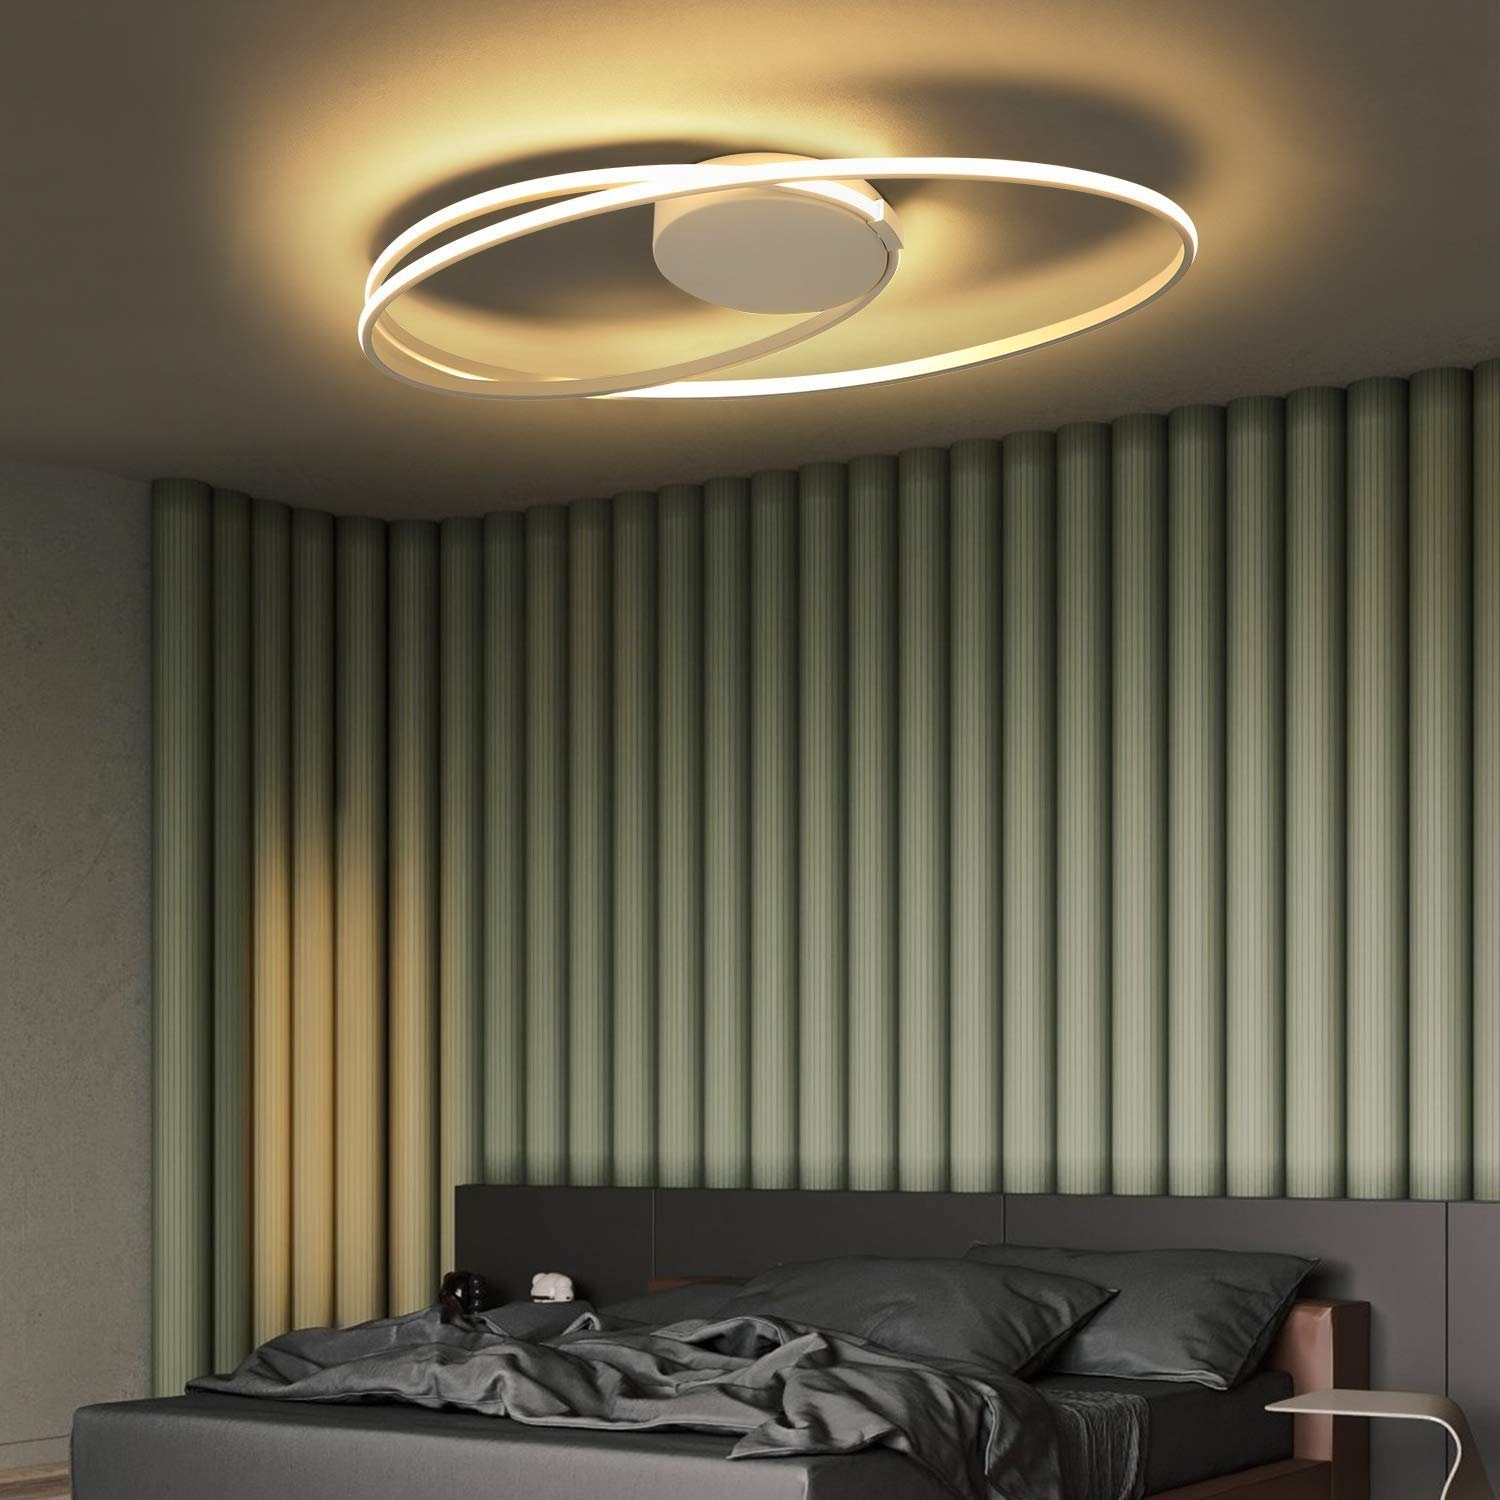 Modern 36W Deckenlampe Warmweiß LED Deckenleuchte Wohnzimmer Wandlampe Licht TOP 